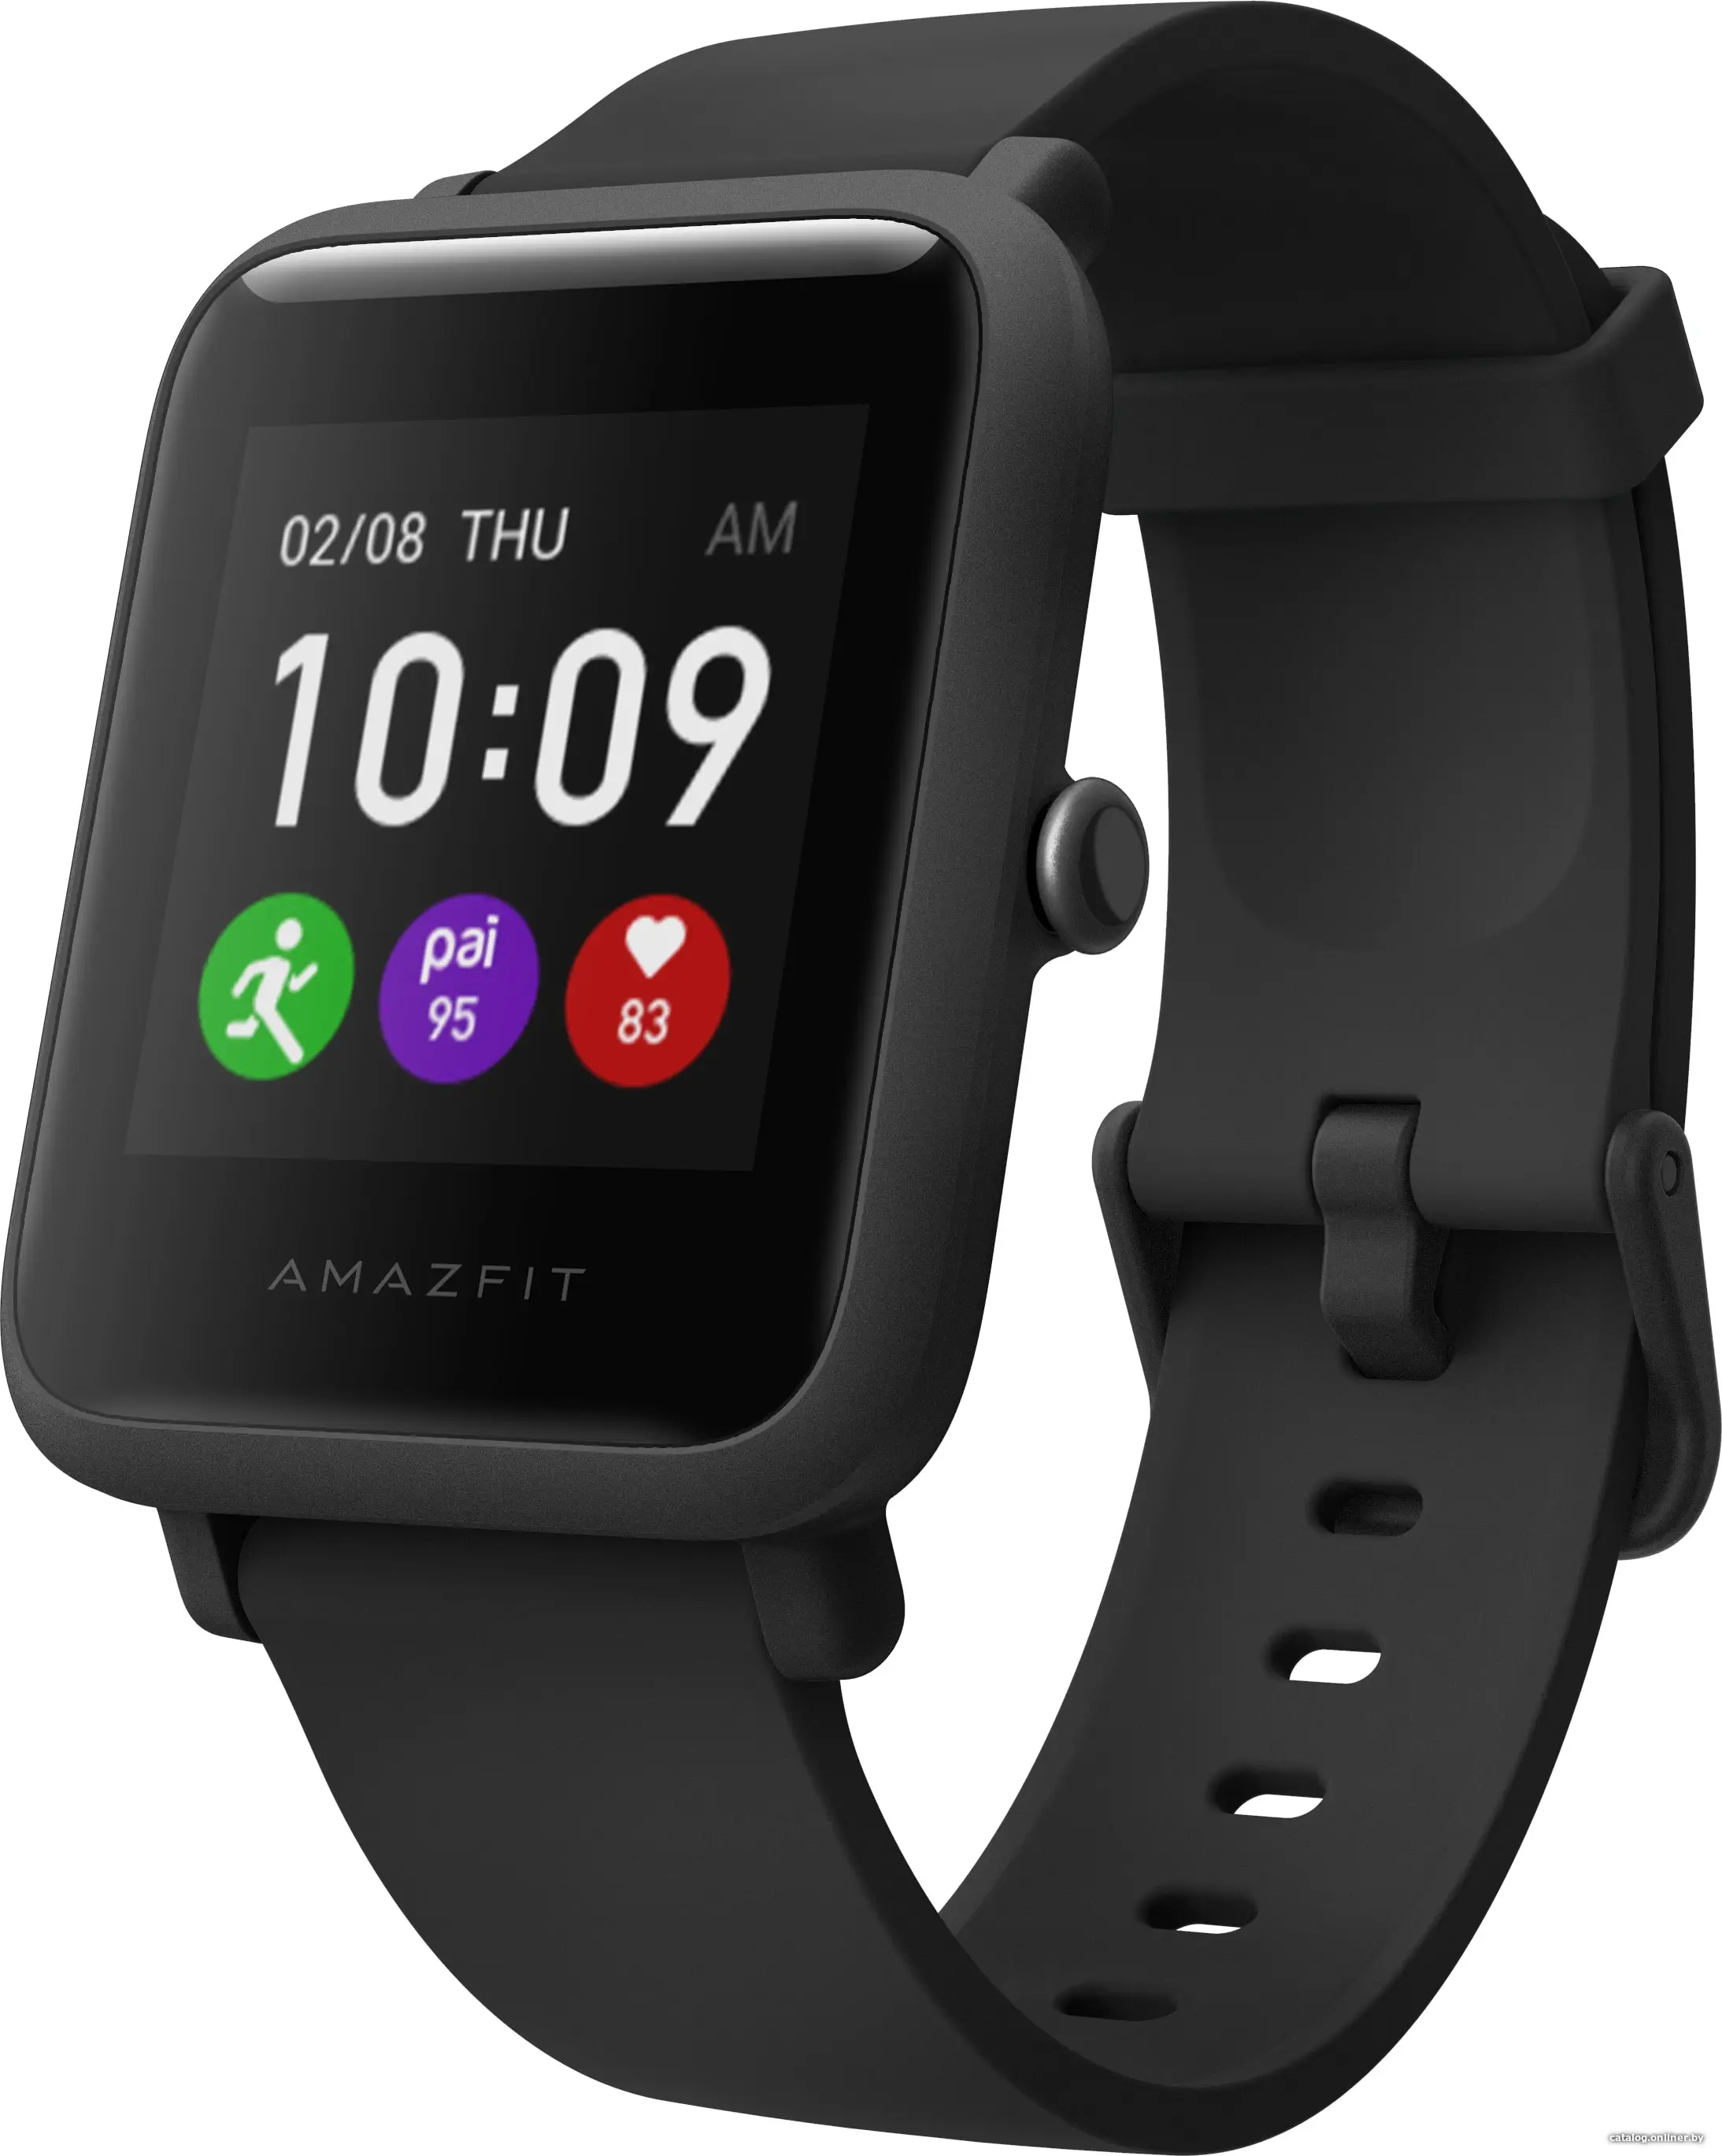 Купить Умные часы Amazfit Bip Lite (черный), цена, опт и розница